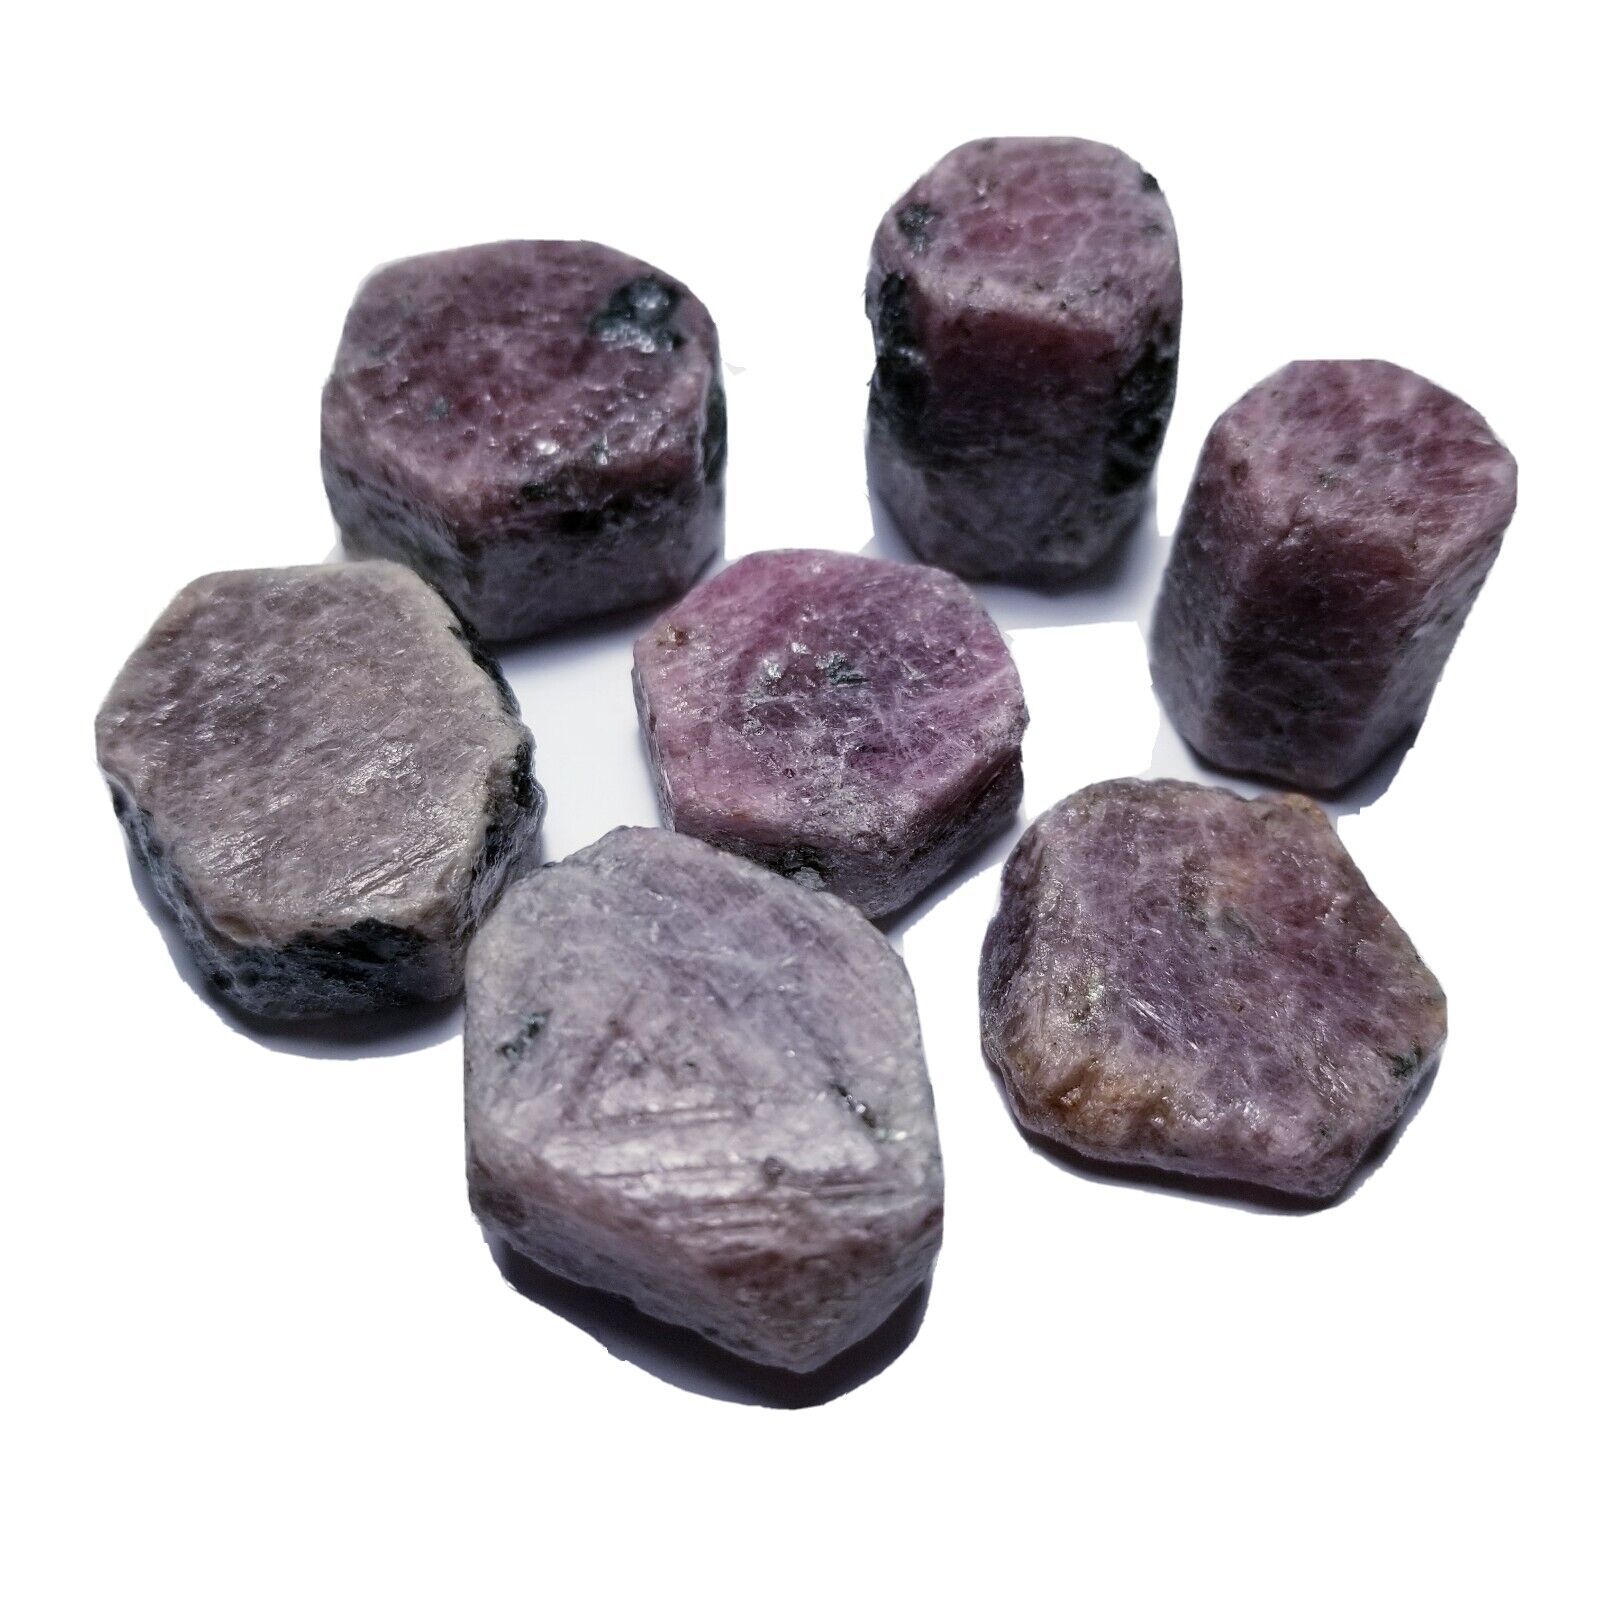 1 Ruby Sapphire Crystals Red Pink Purple Corundum Gemstones